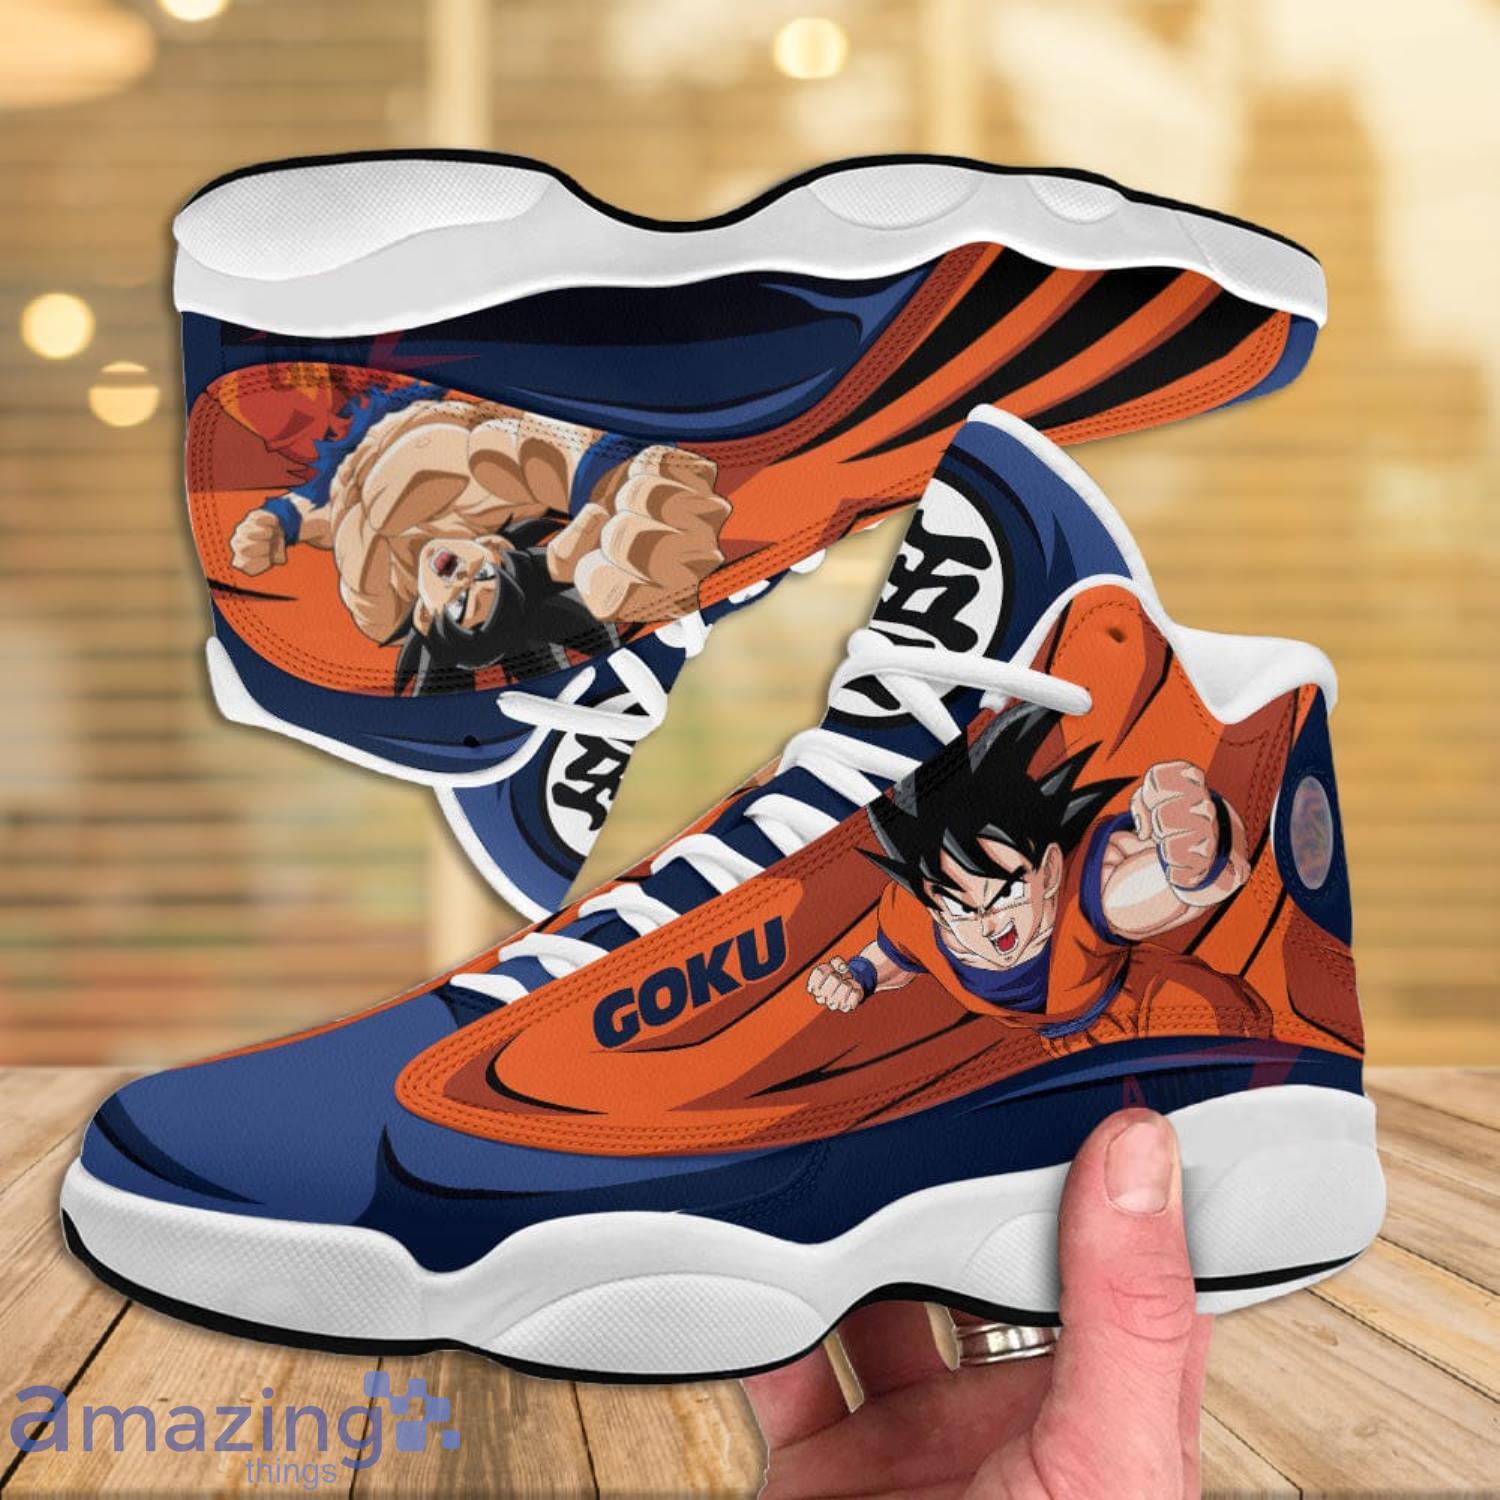 Anime Shoes My Hero Academia Todoroki Skate Sneakers | Fashion tennis shoes,  Me too shoes, Sneakers fashion